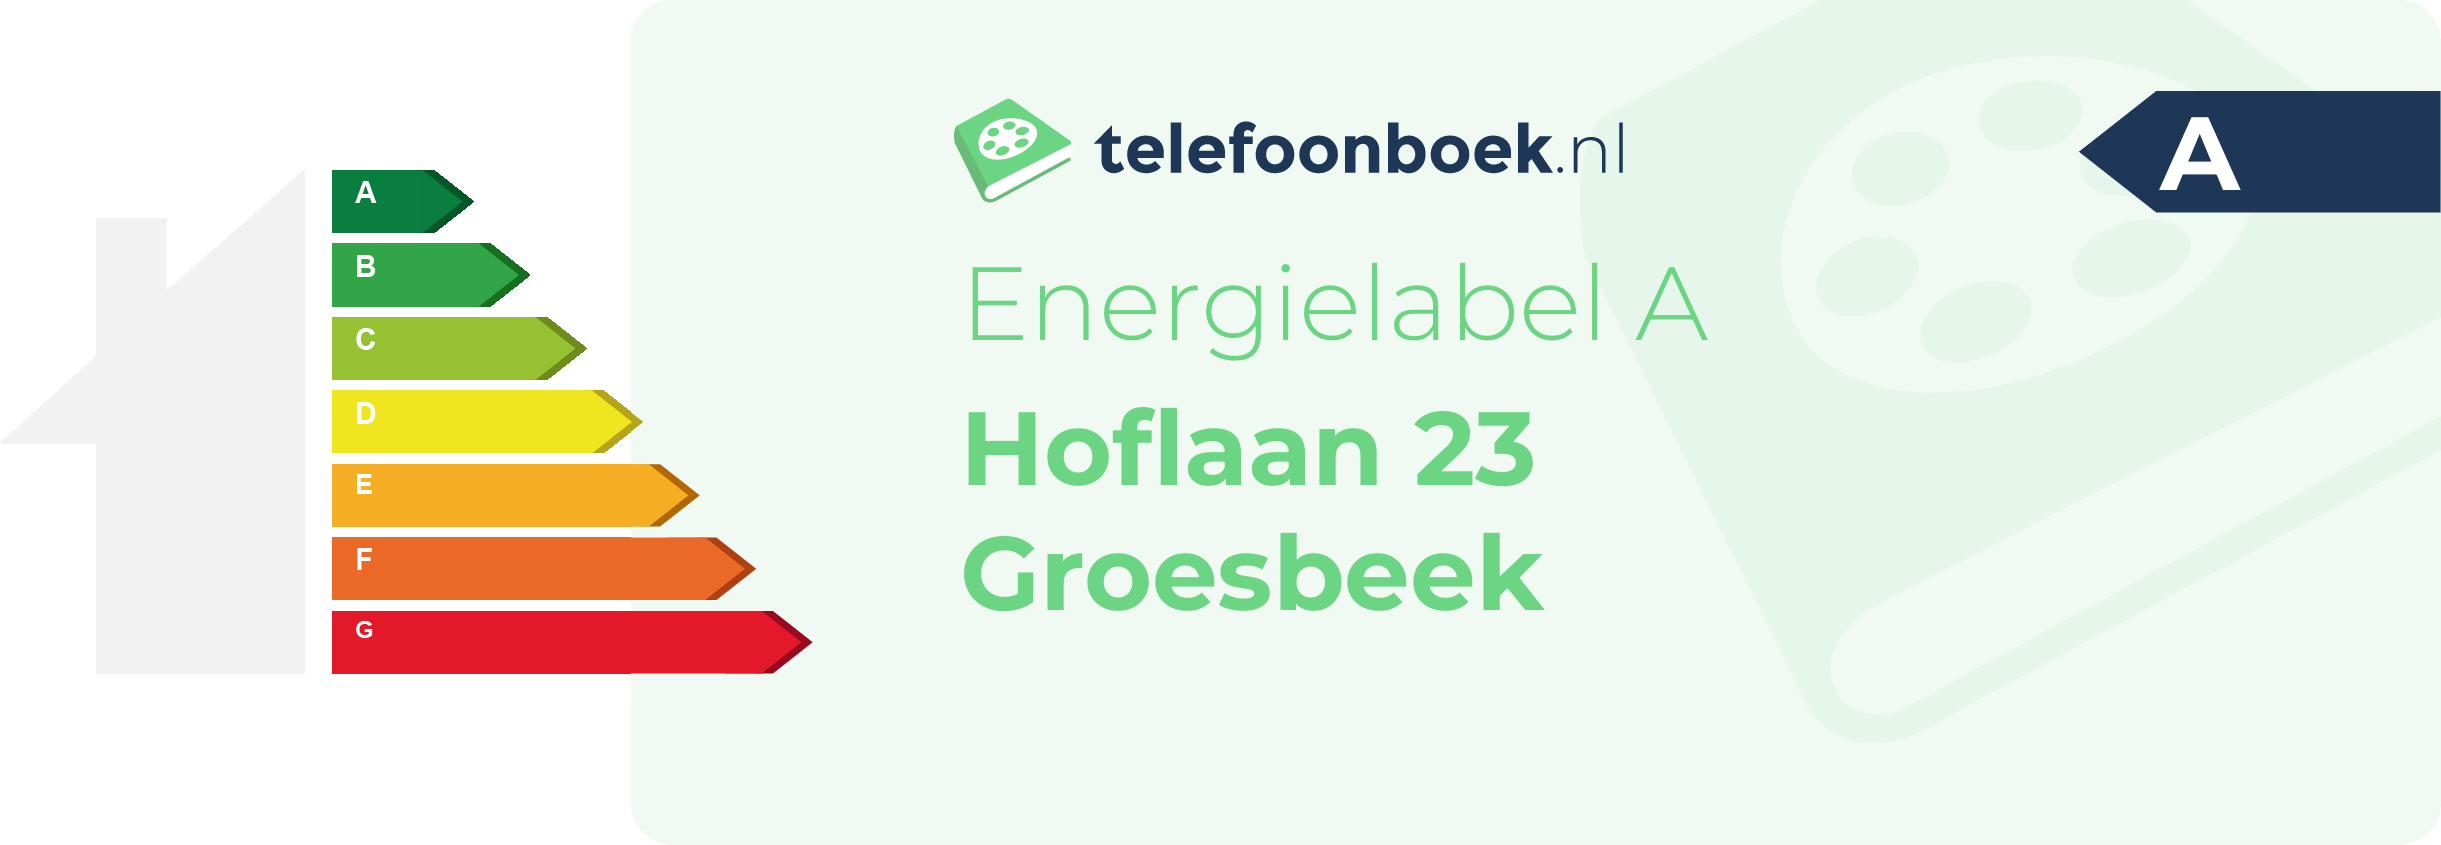 Energielabel Hoflaan 23 Groesbeek